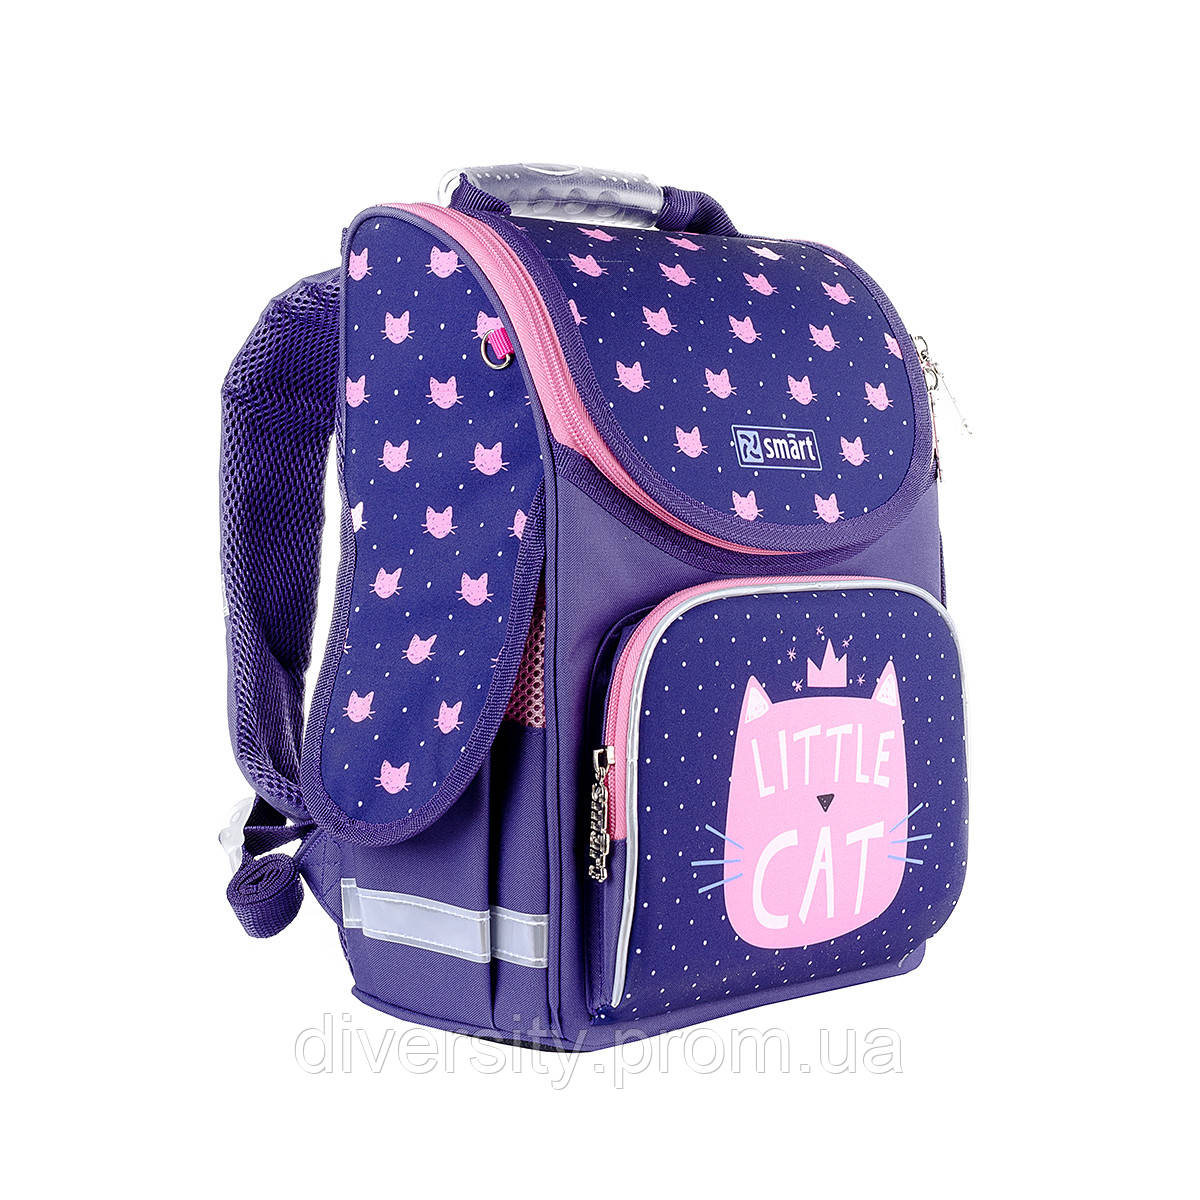 Школьный рюкзак,каркасный  PG-11 "Little Cat" серия "Smart" 558049